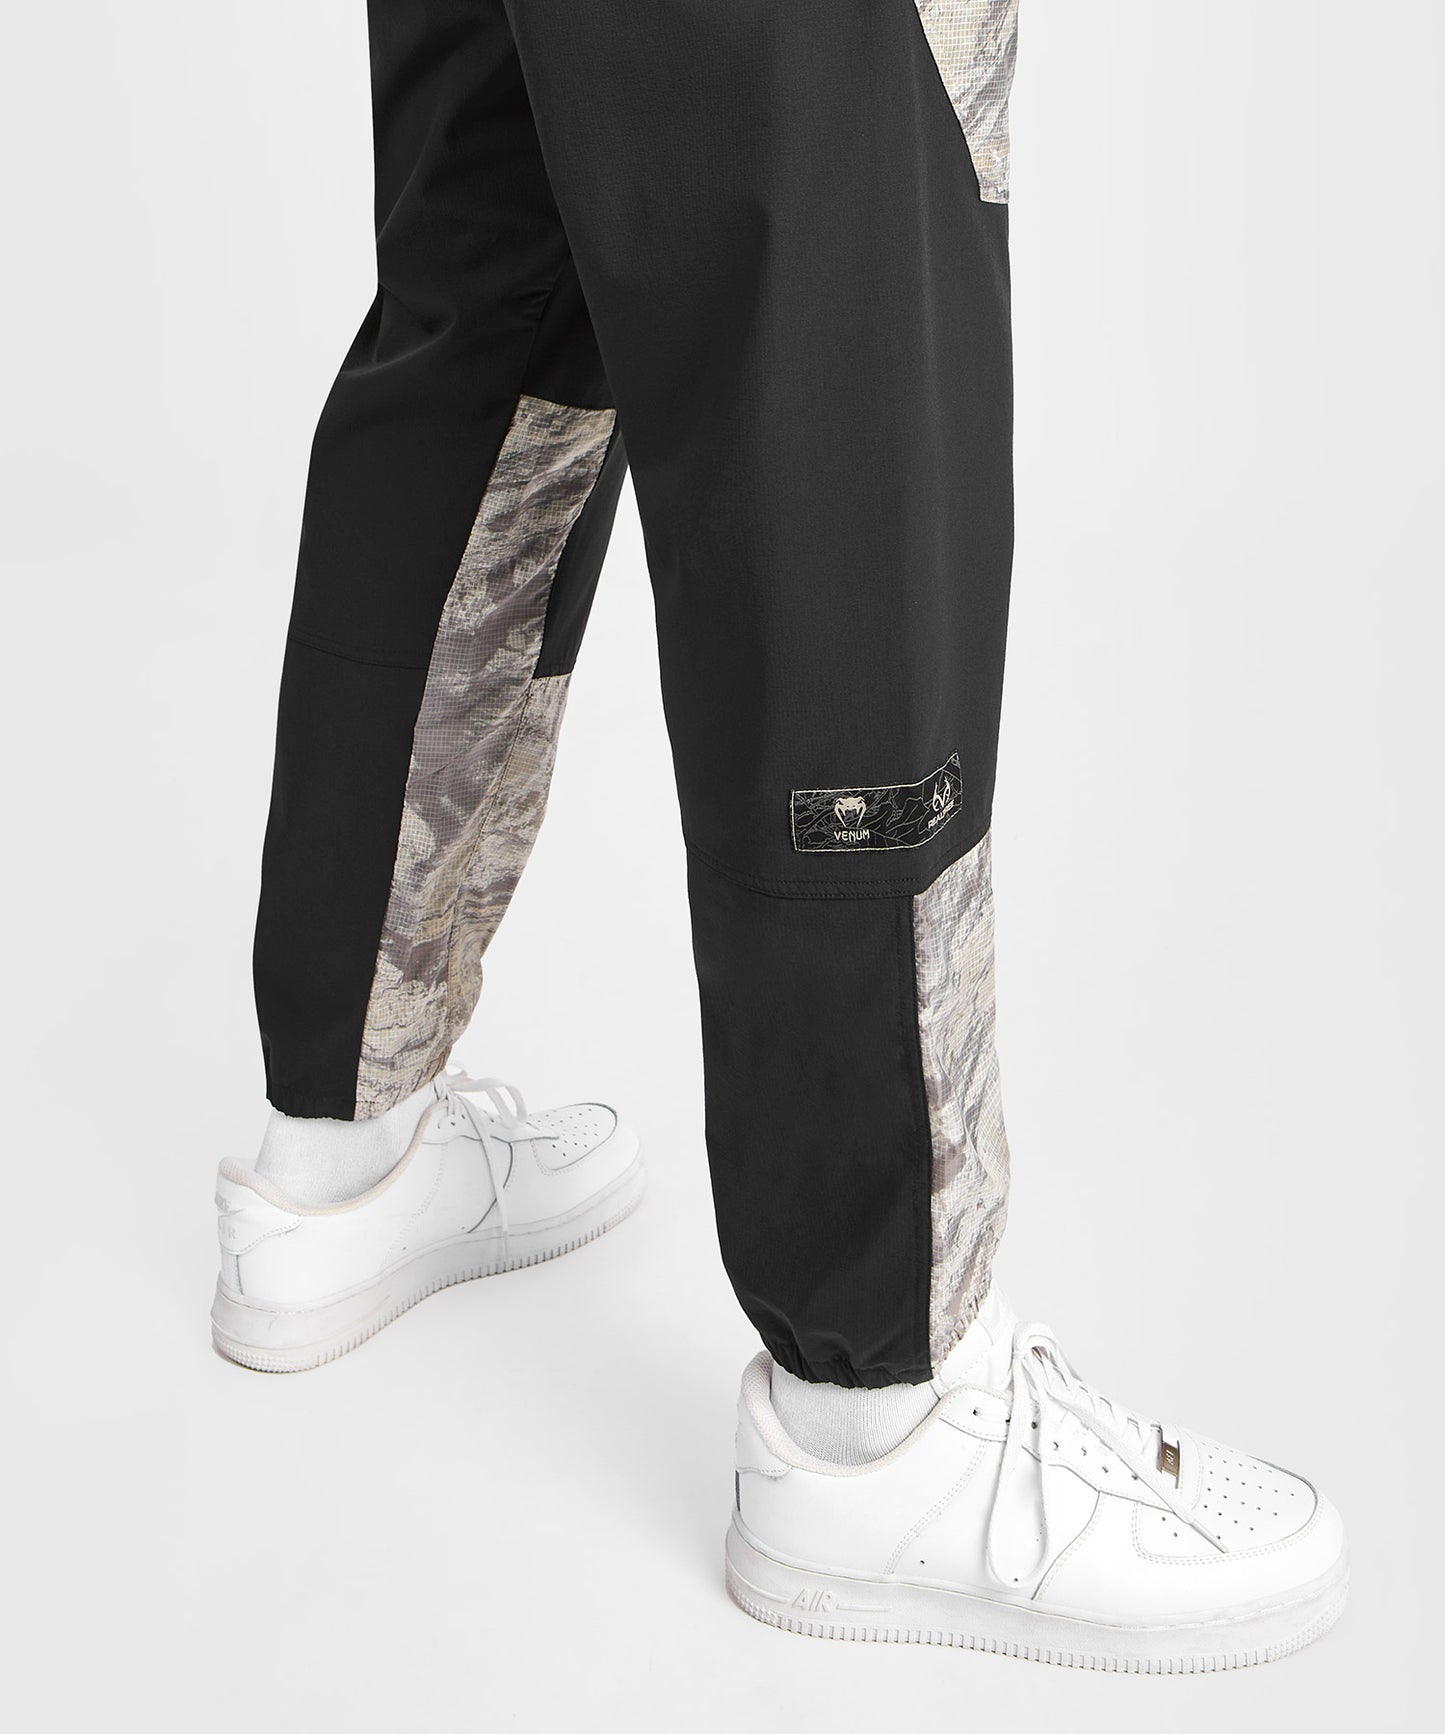 Venum Laser XT Realtree Pantalone da Jogging - Nero/Deserto Camo